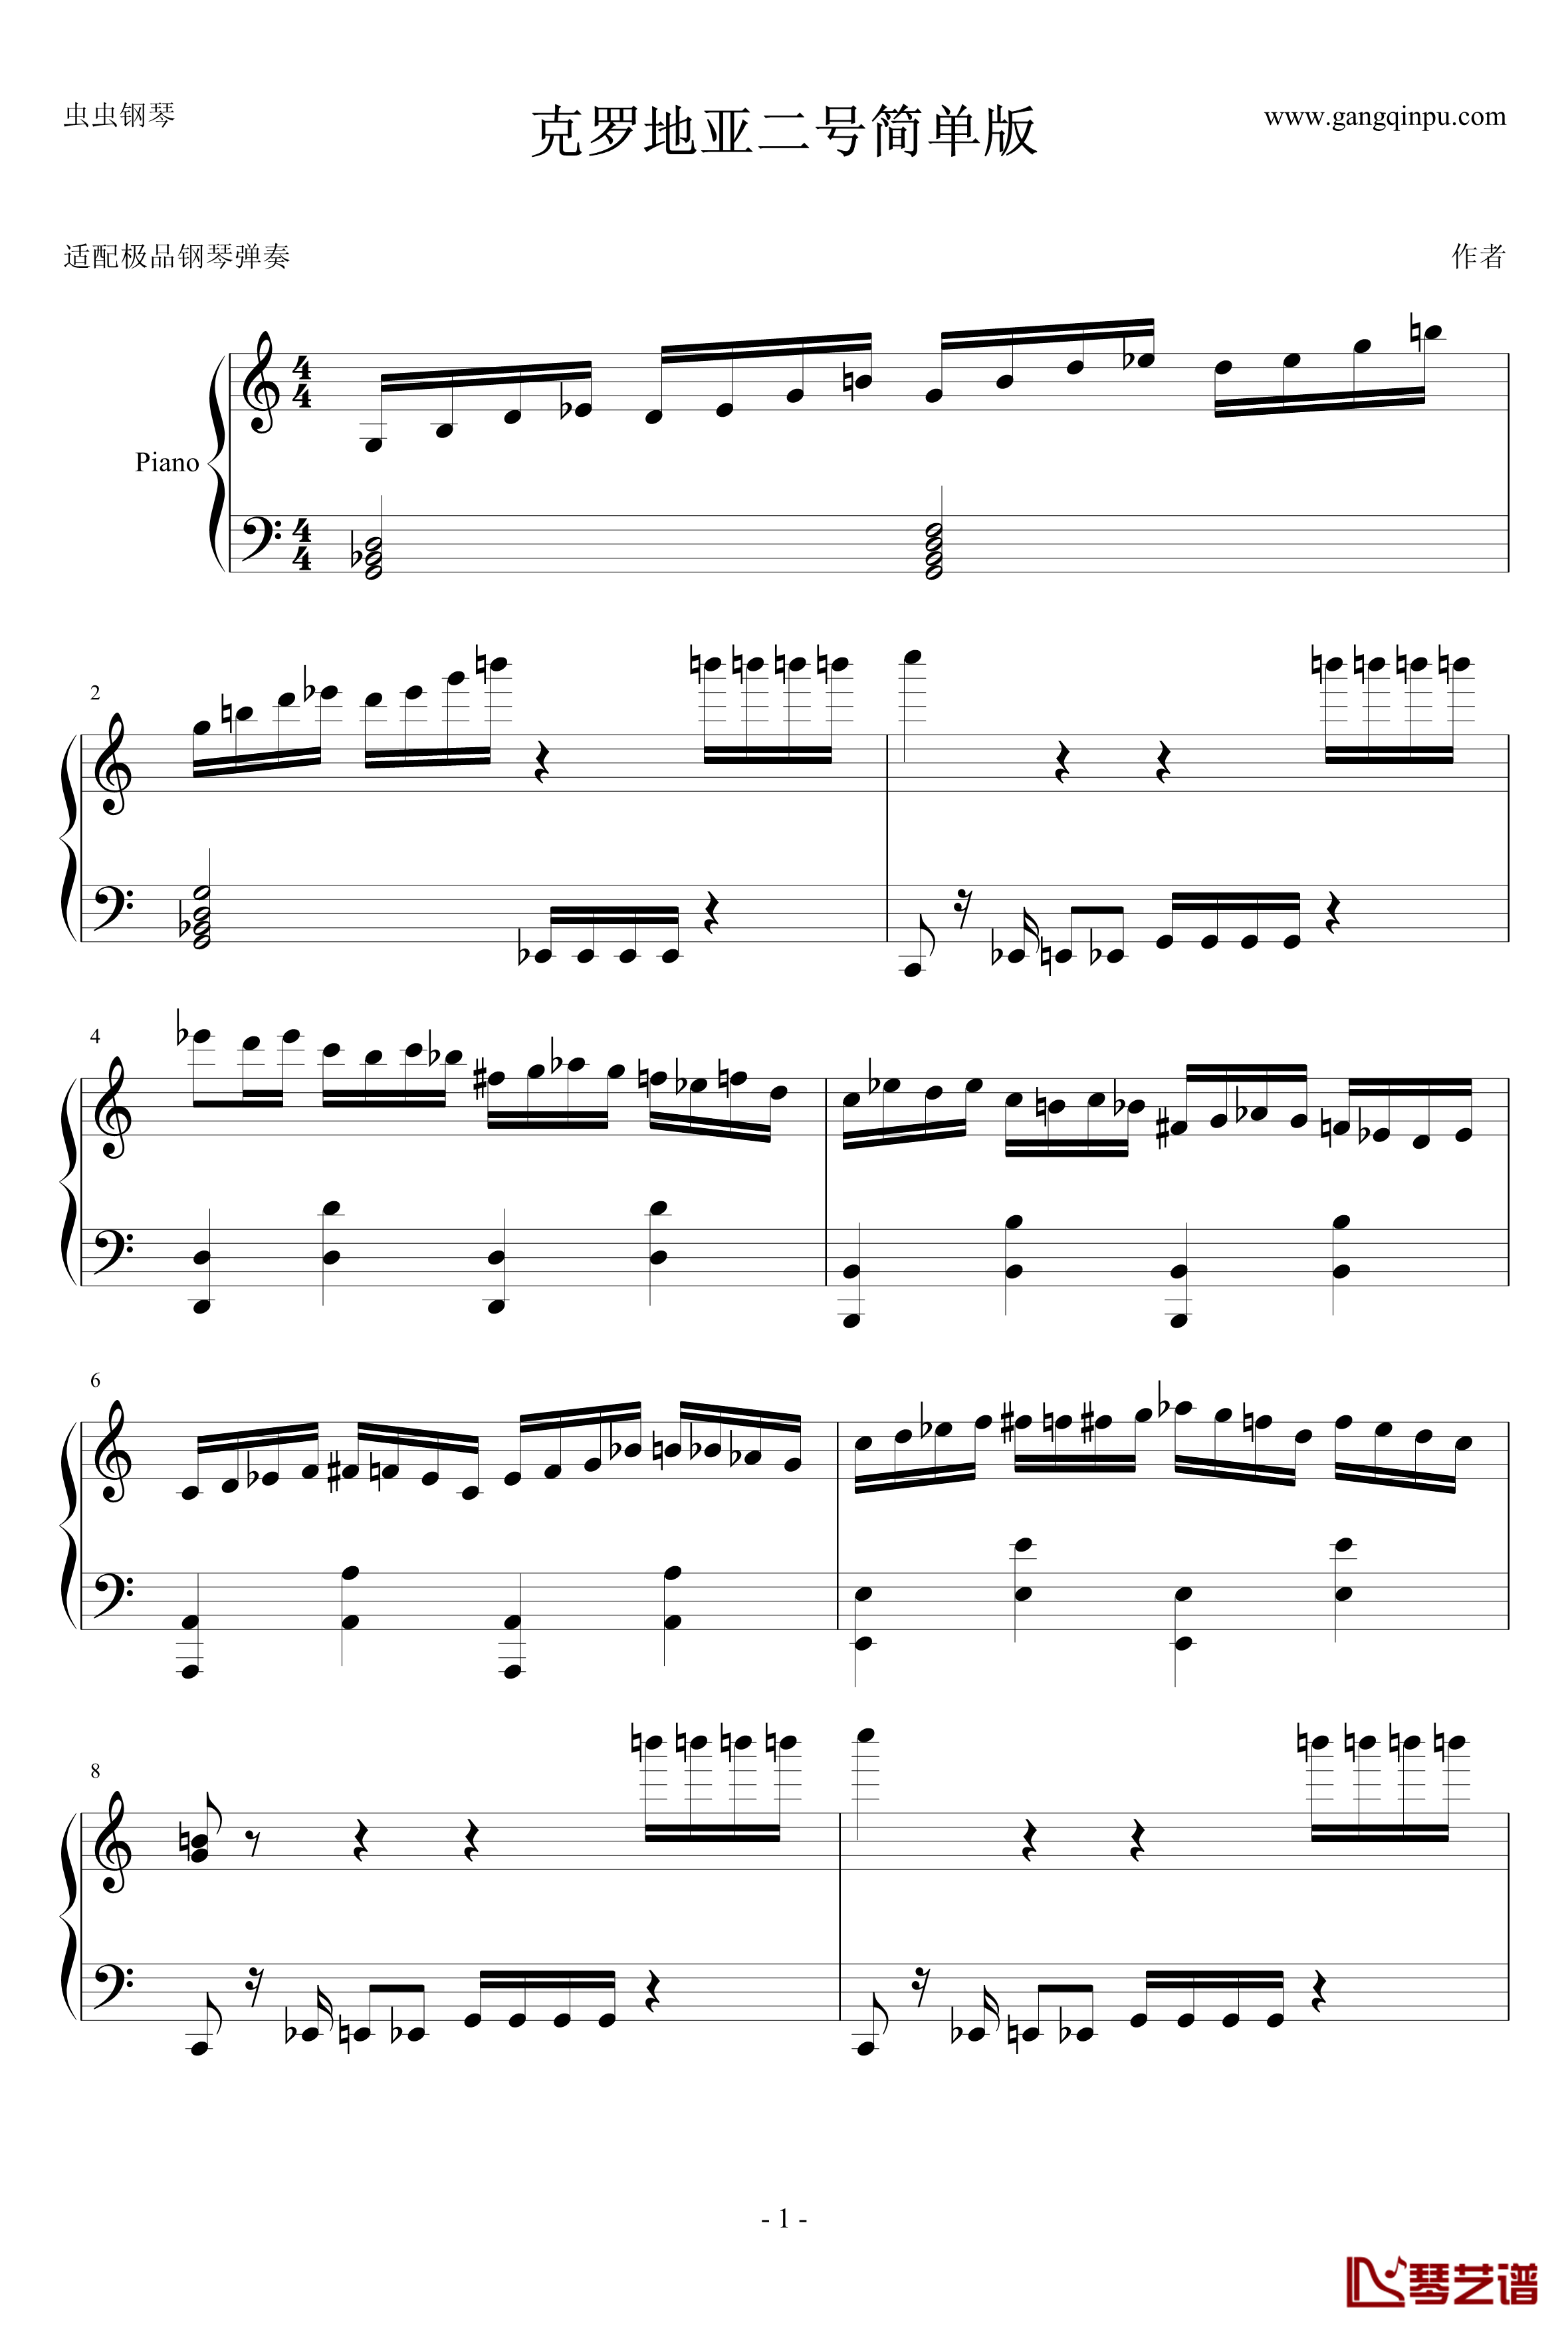 克罗地亚二号简单版钢琴谱-马克西姆-Maksim·Mrvica1